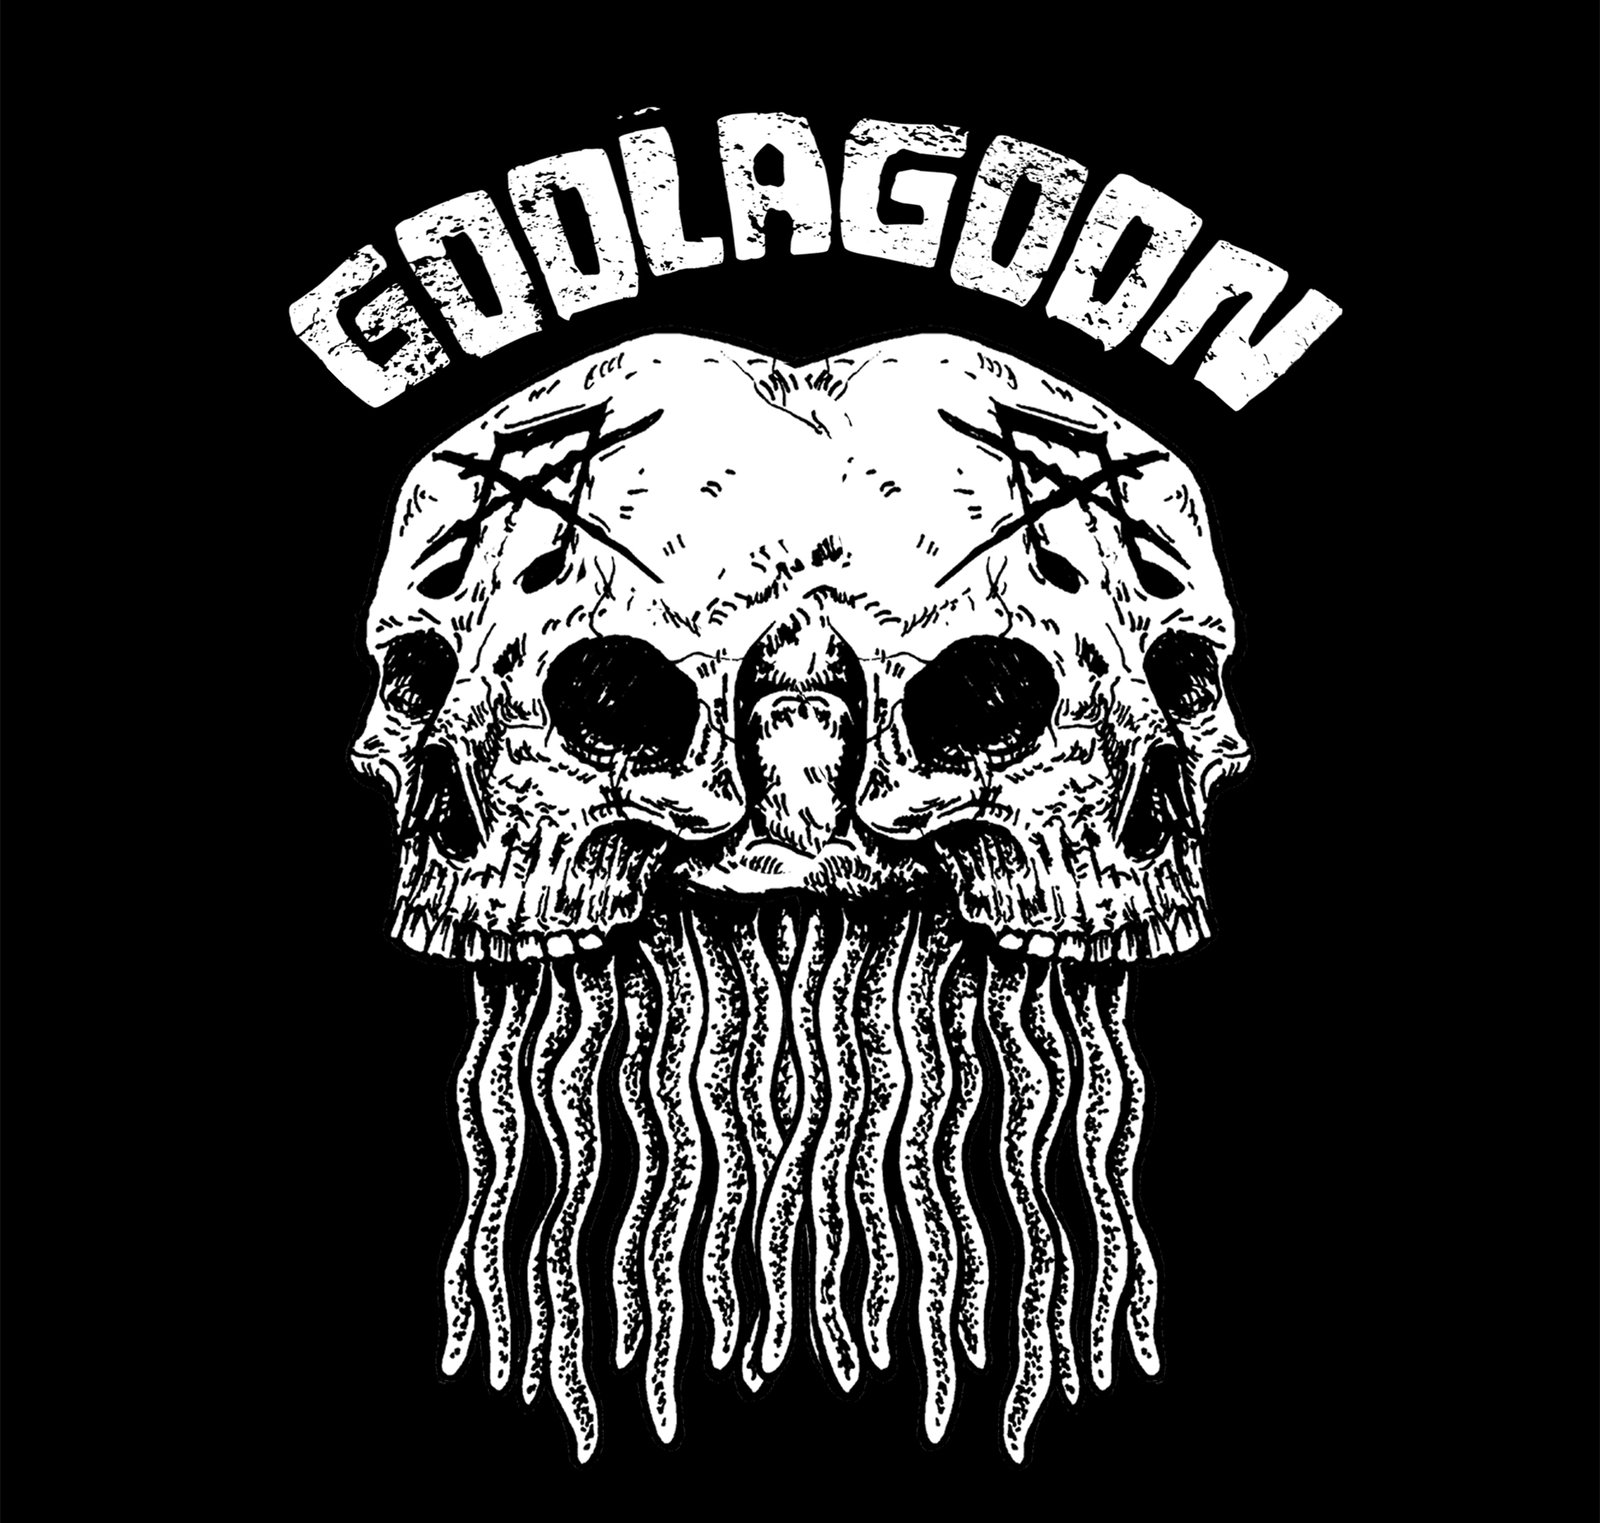 Goolagoon